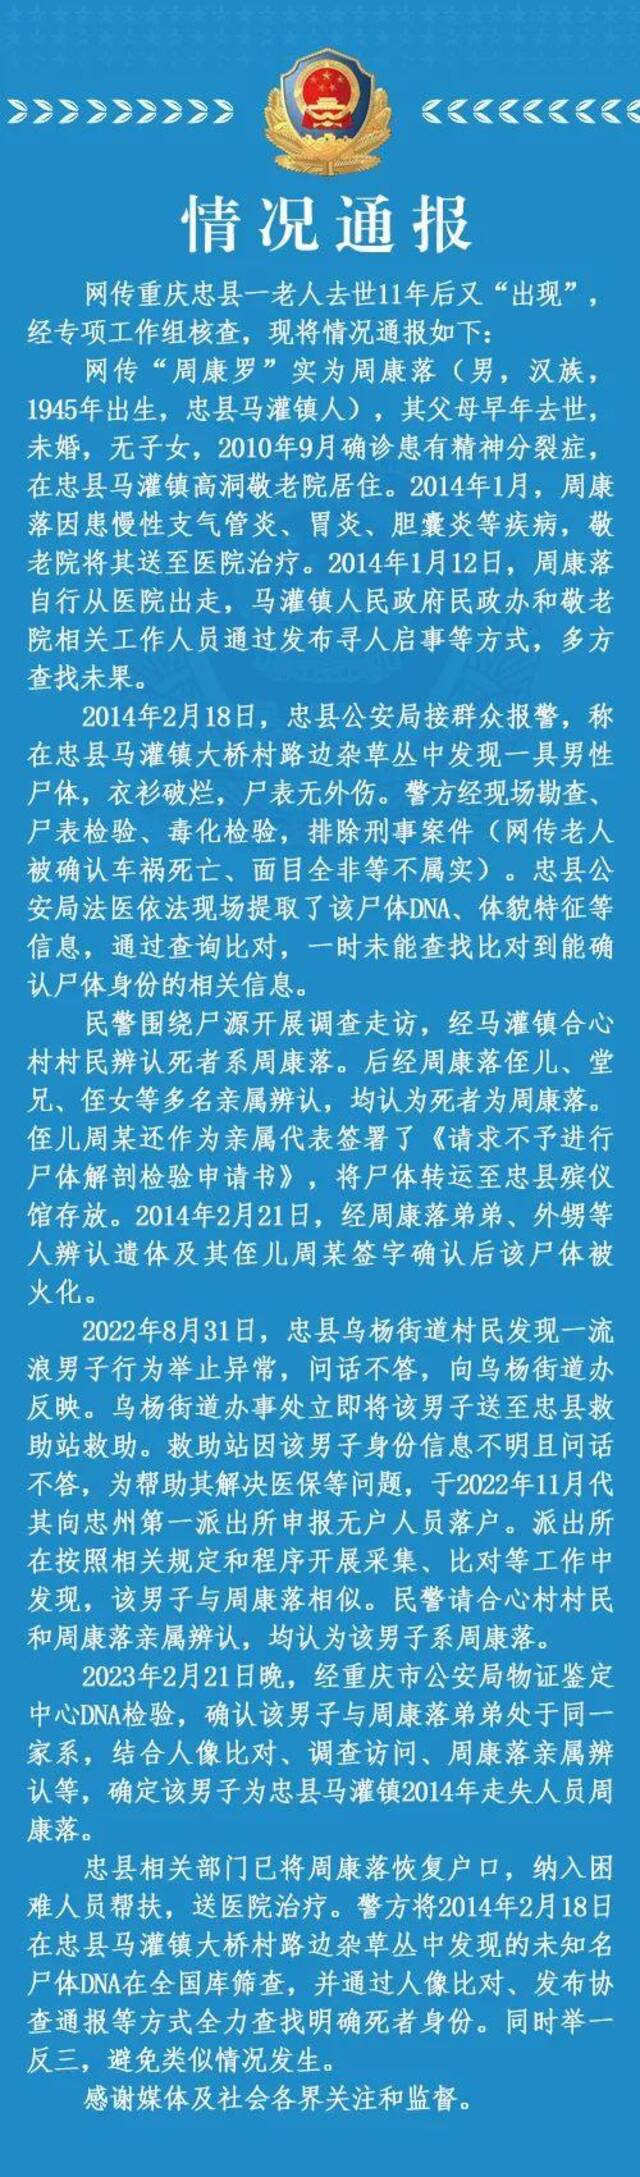 网传重庆忠县一老人被确认车祸死亡11年后死而复生，警方通报